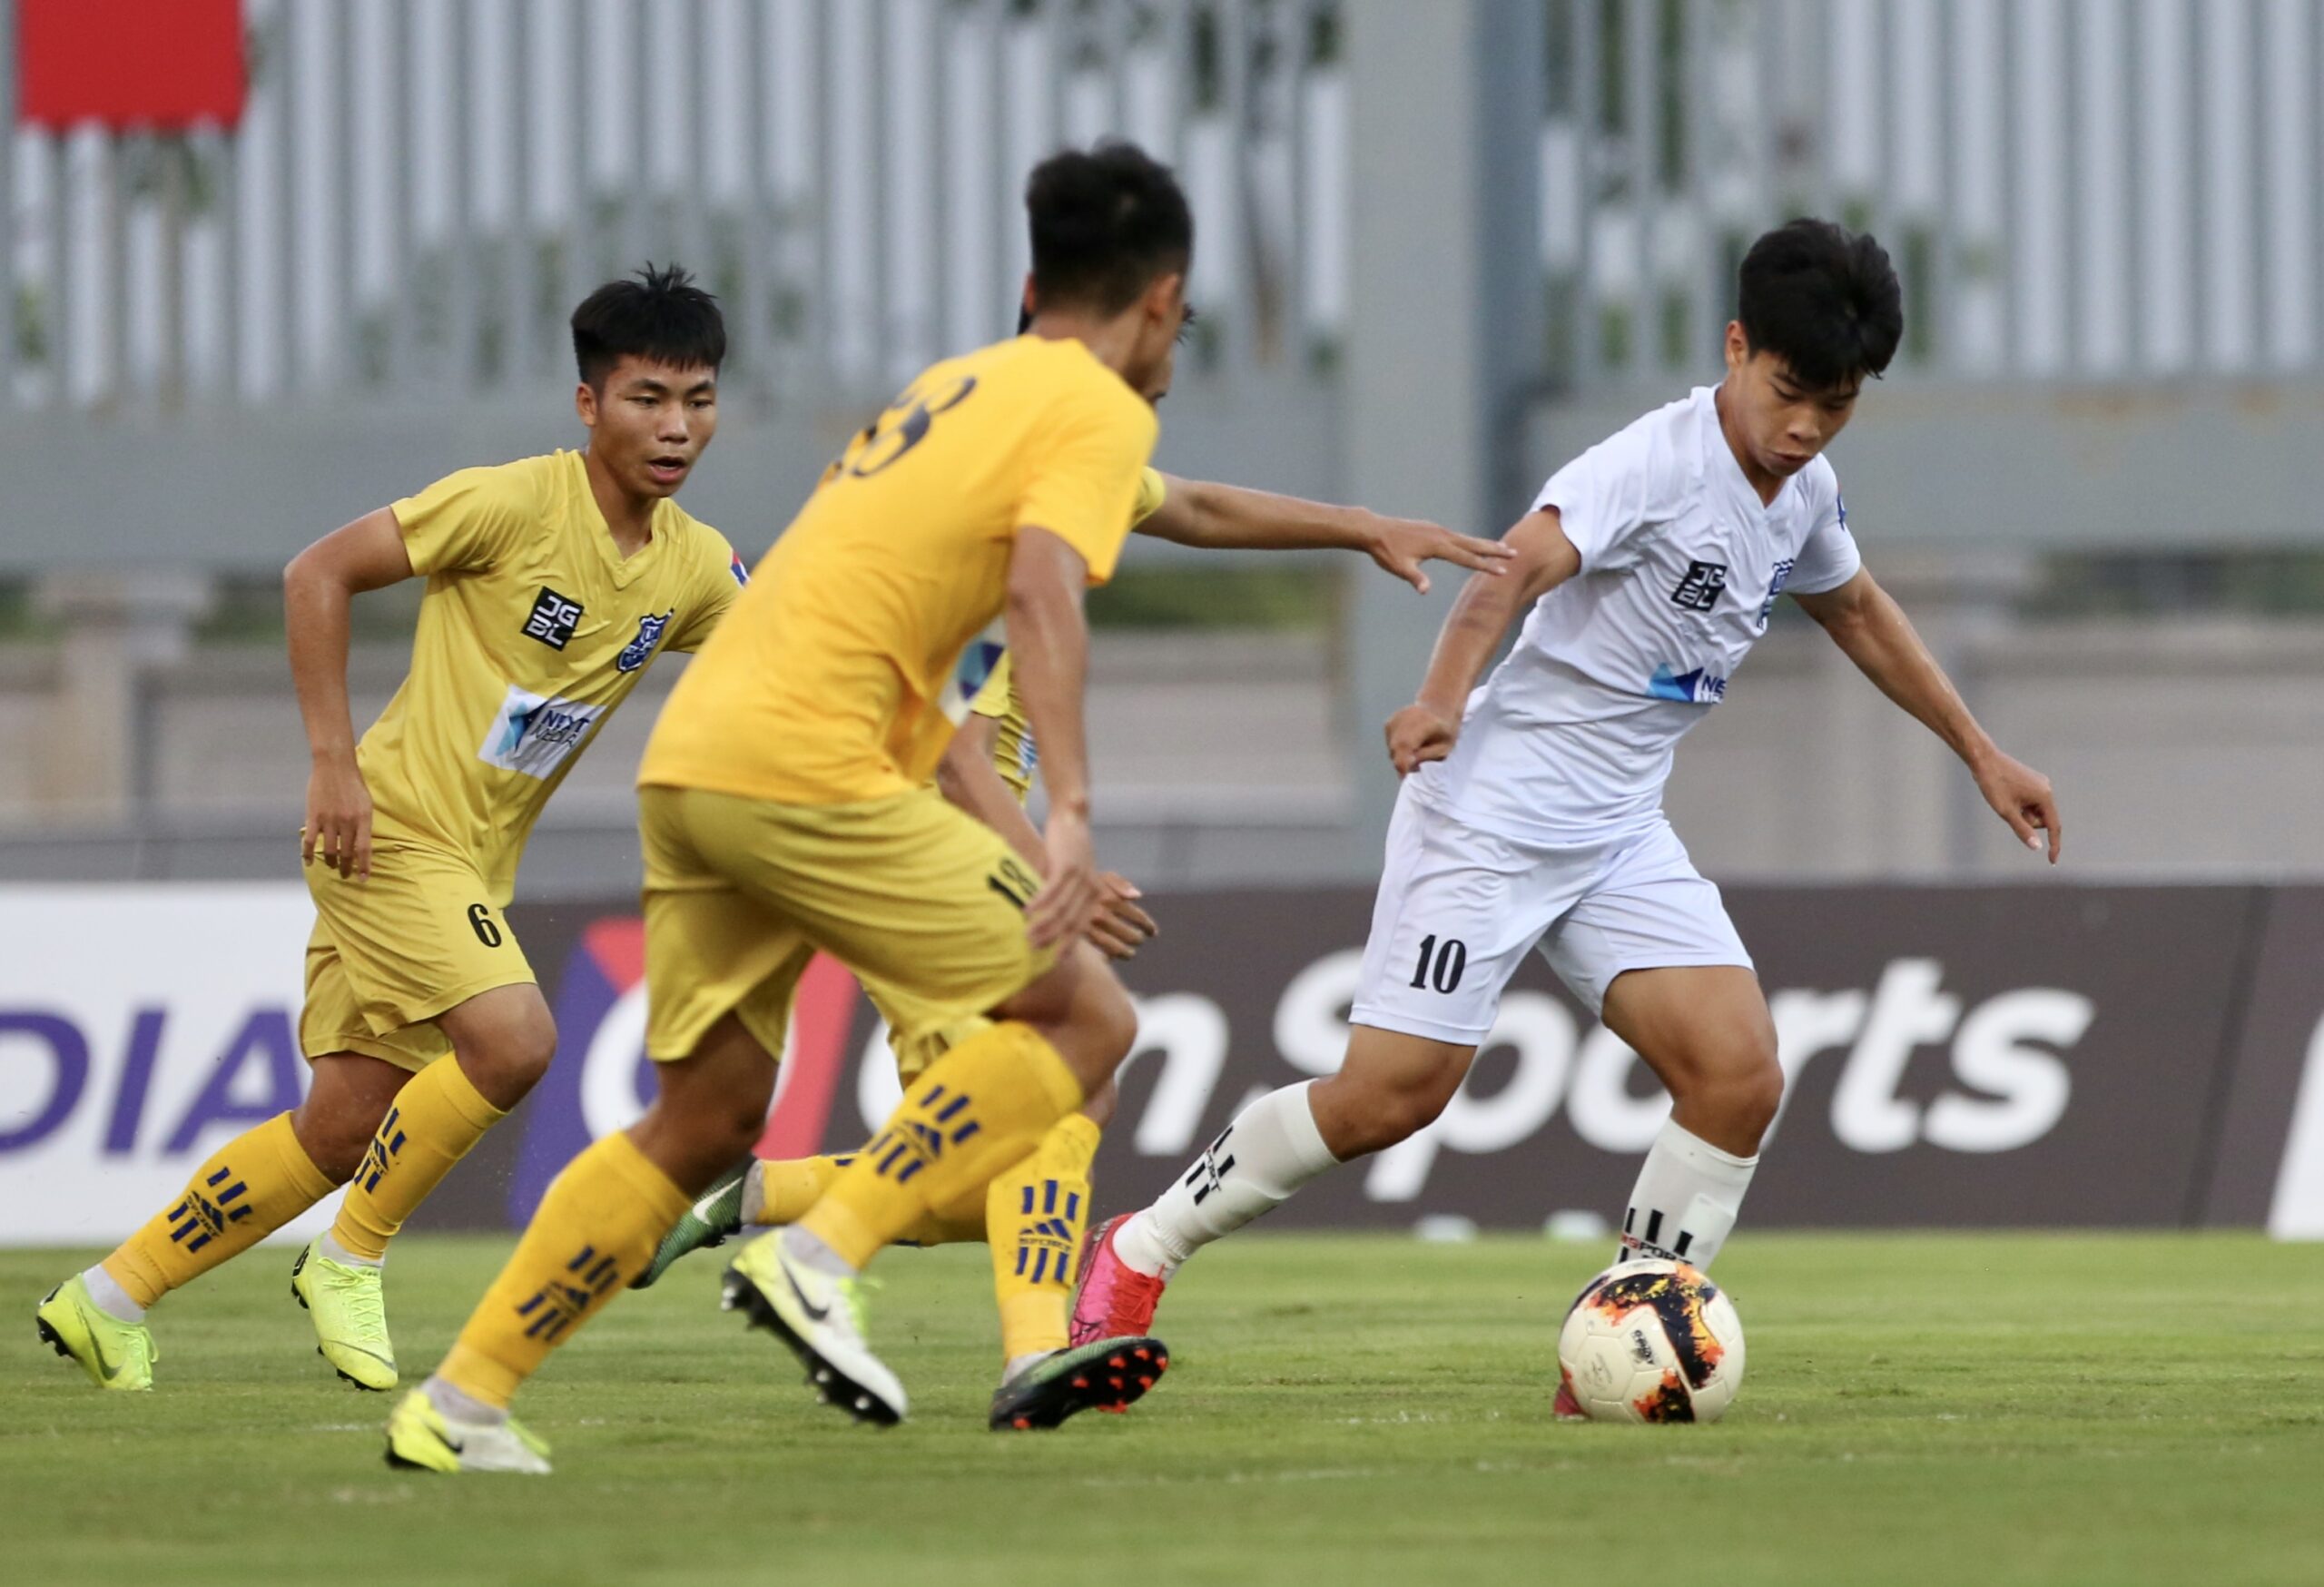 UBND tỉnh Nghệ An tìm kiếm đối tác tài trợ đội bóng xứ Nghệ